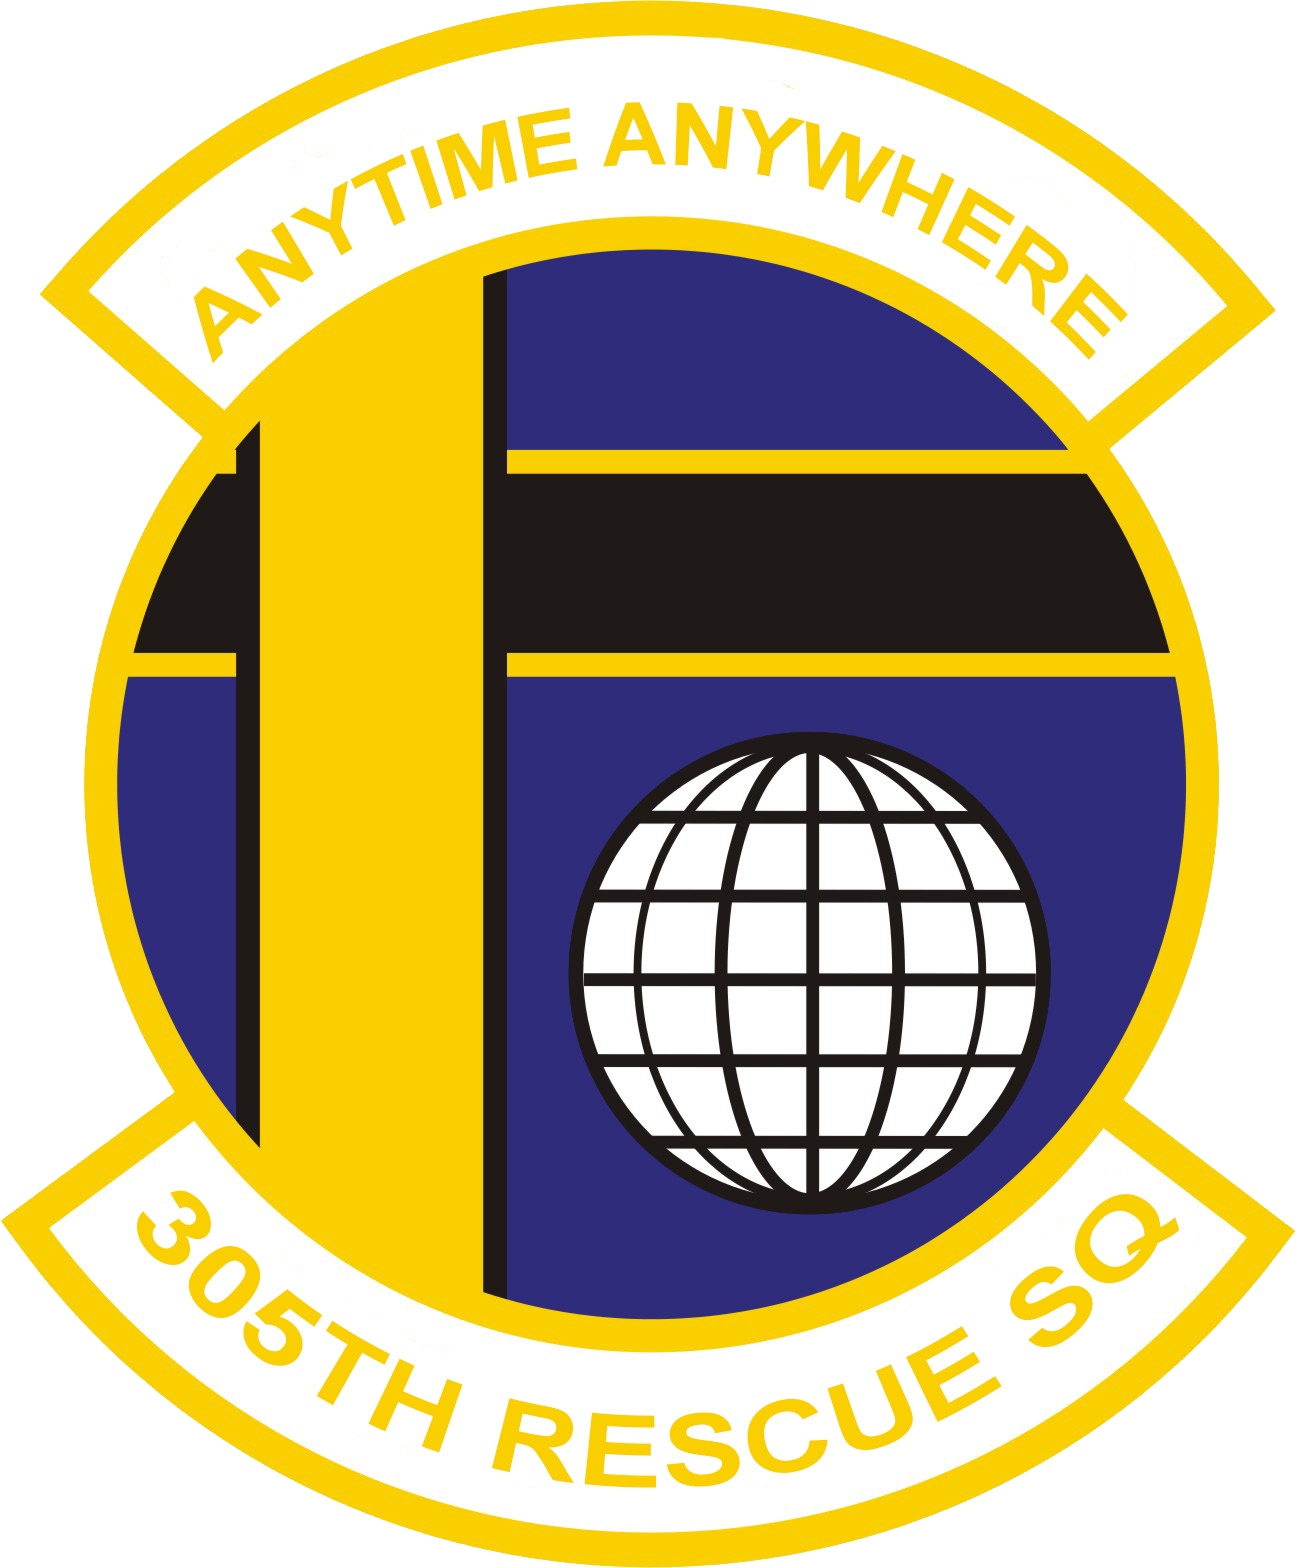 305th Rescue Squadron patch